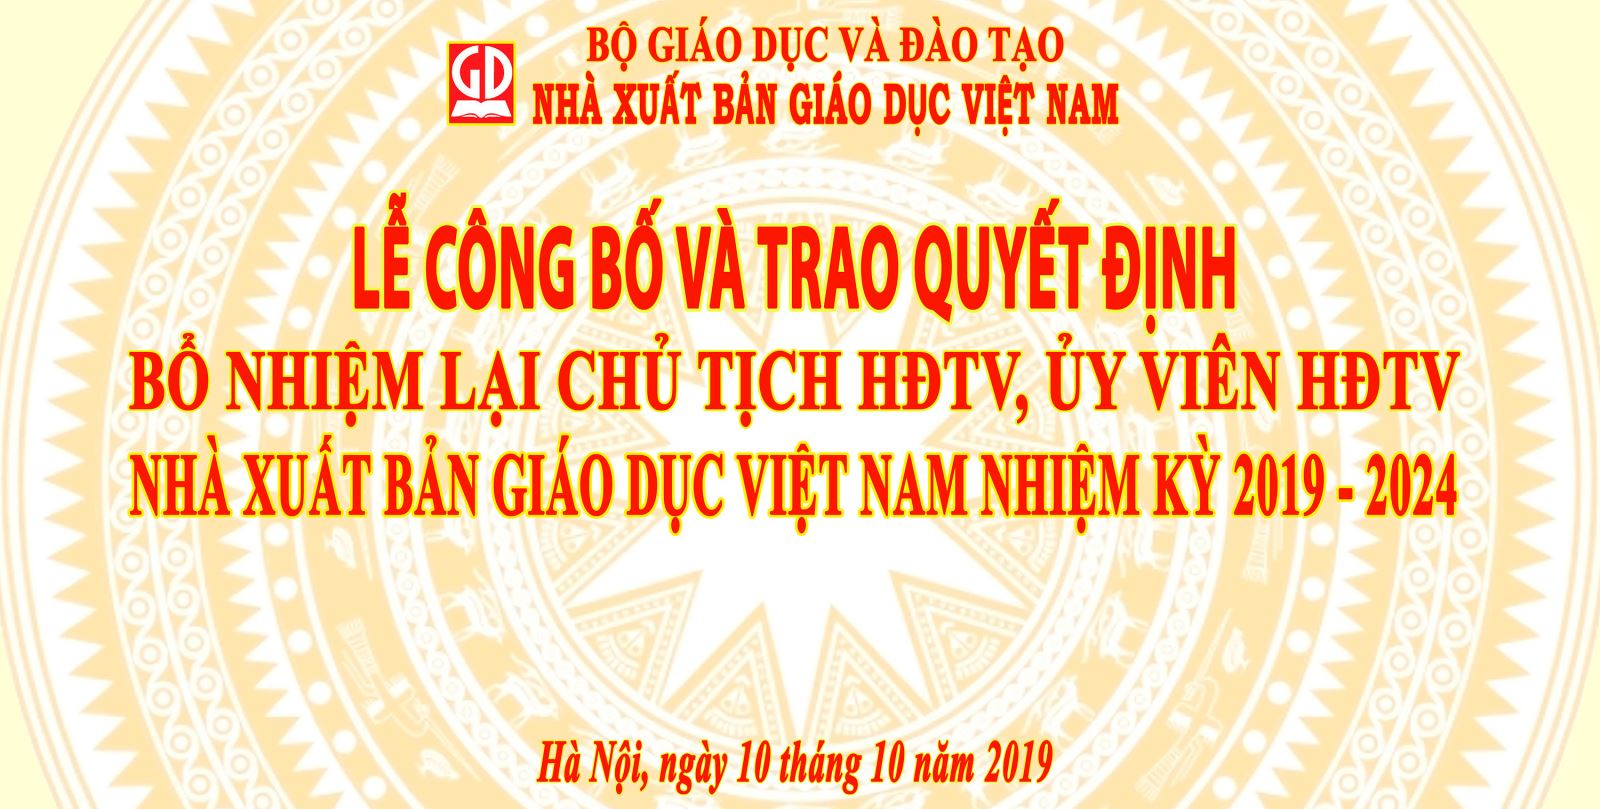 Công bố quyết định bổ nhiệm lại Chủ tịch HĐTV và Uỷ viên HĐTV NXB Giáo dục Việt Nam